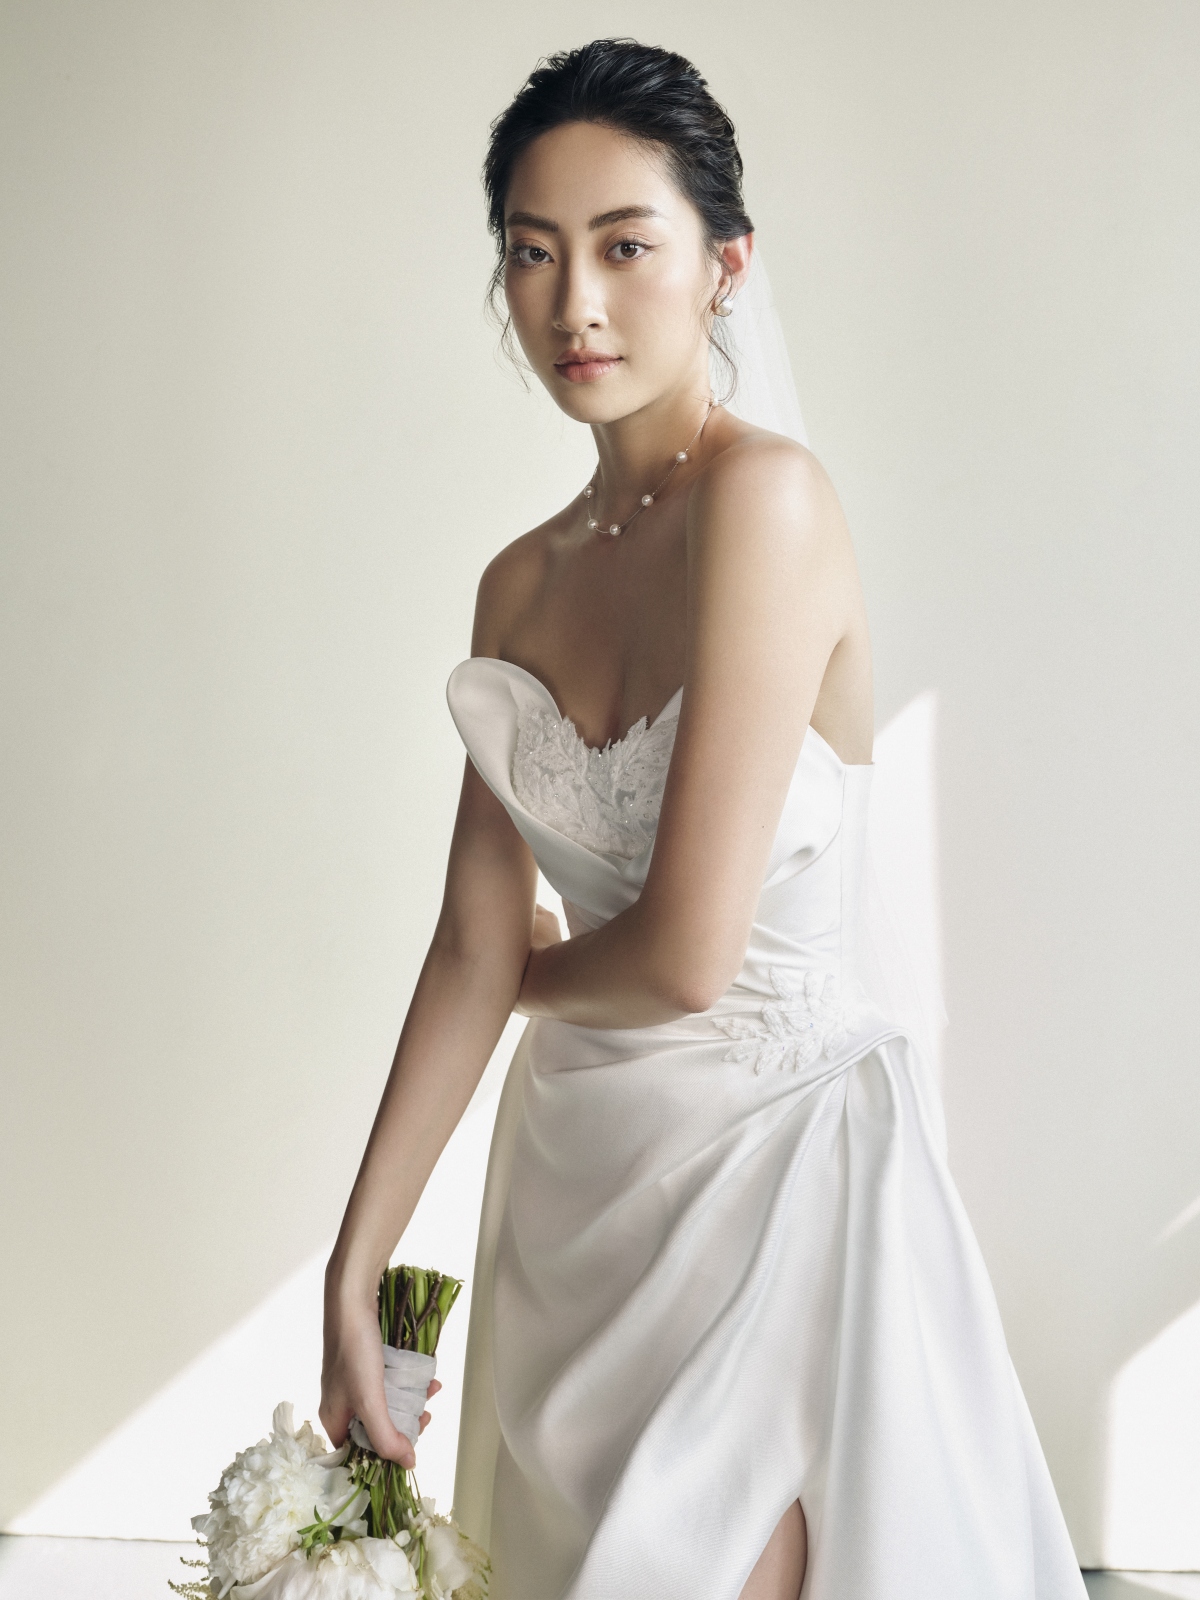 Hoa hậu Lương Thùy Linh làm cô dâu đẹp thanh khiết trong bộ ảnh mới - Ảnh 13.